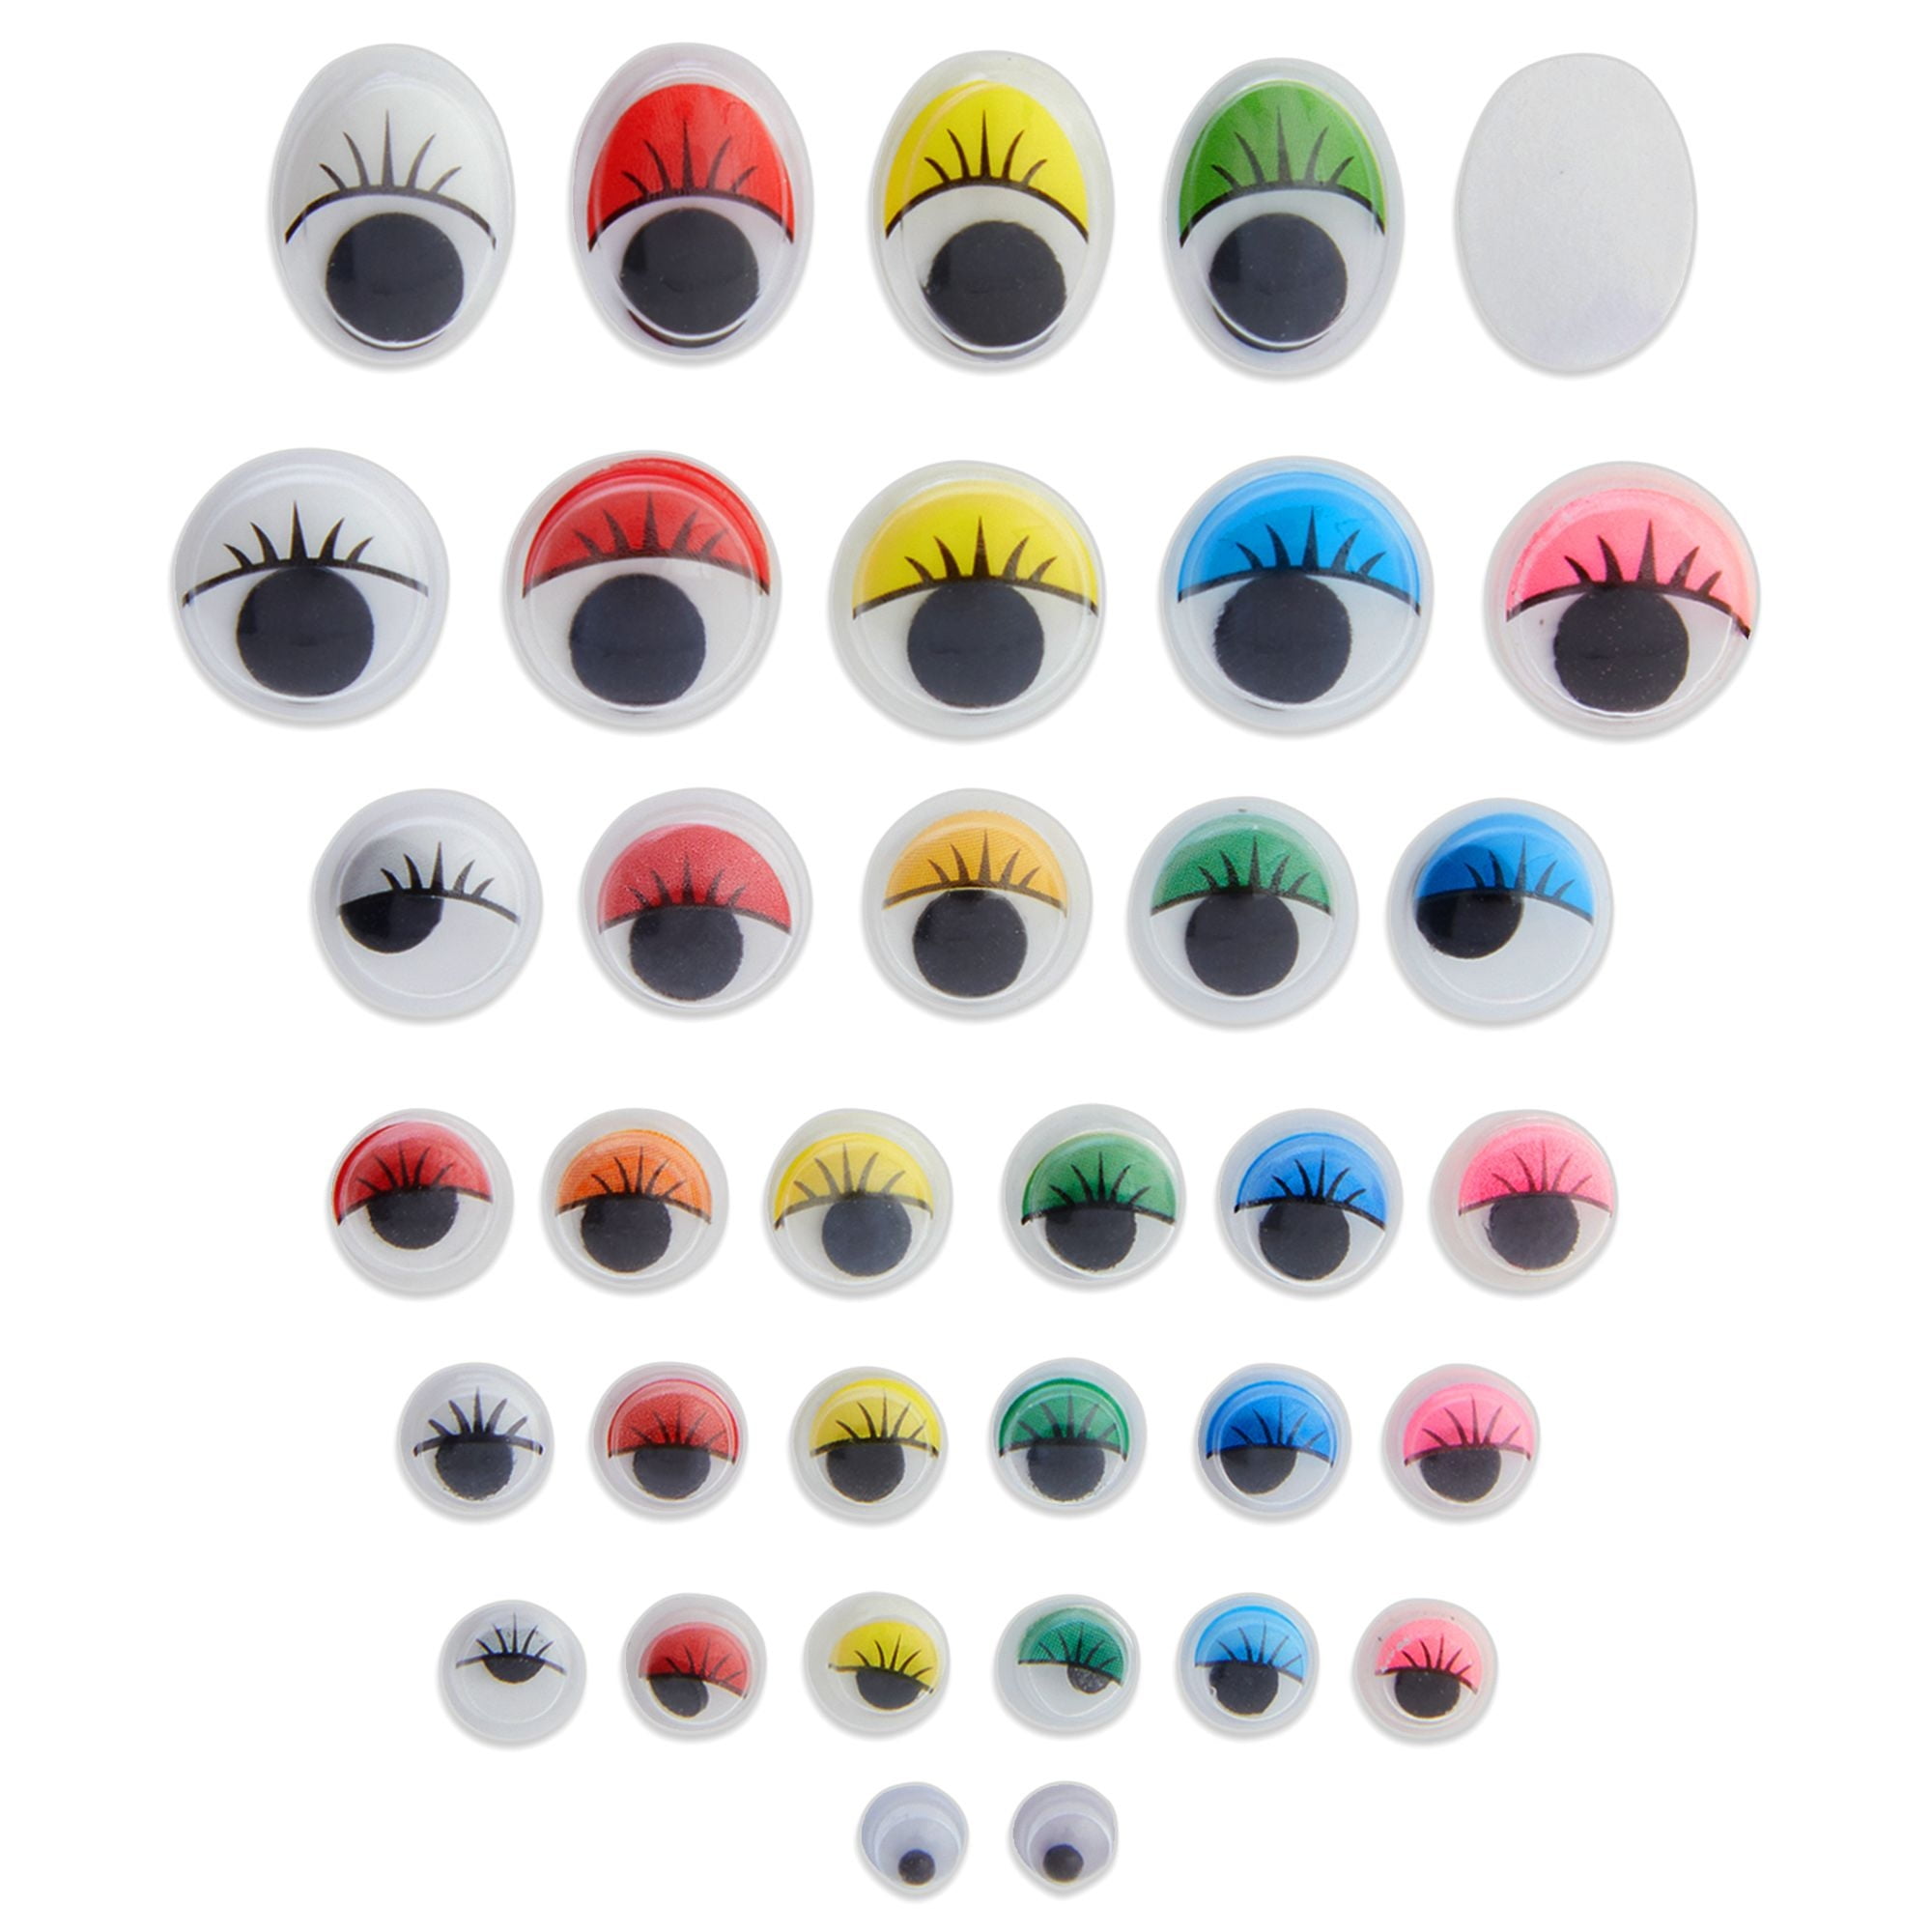 Genie Crafts Googly Eyes 500 Pack Adhesive Wiggle Eyes